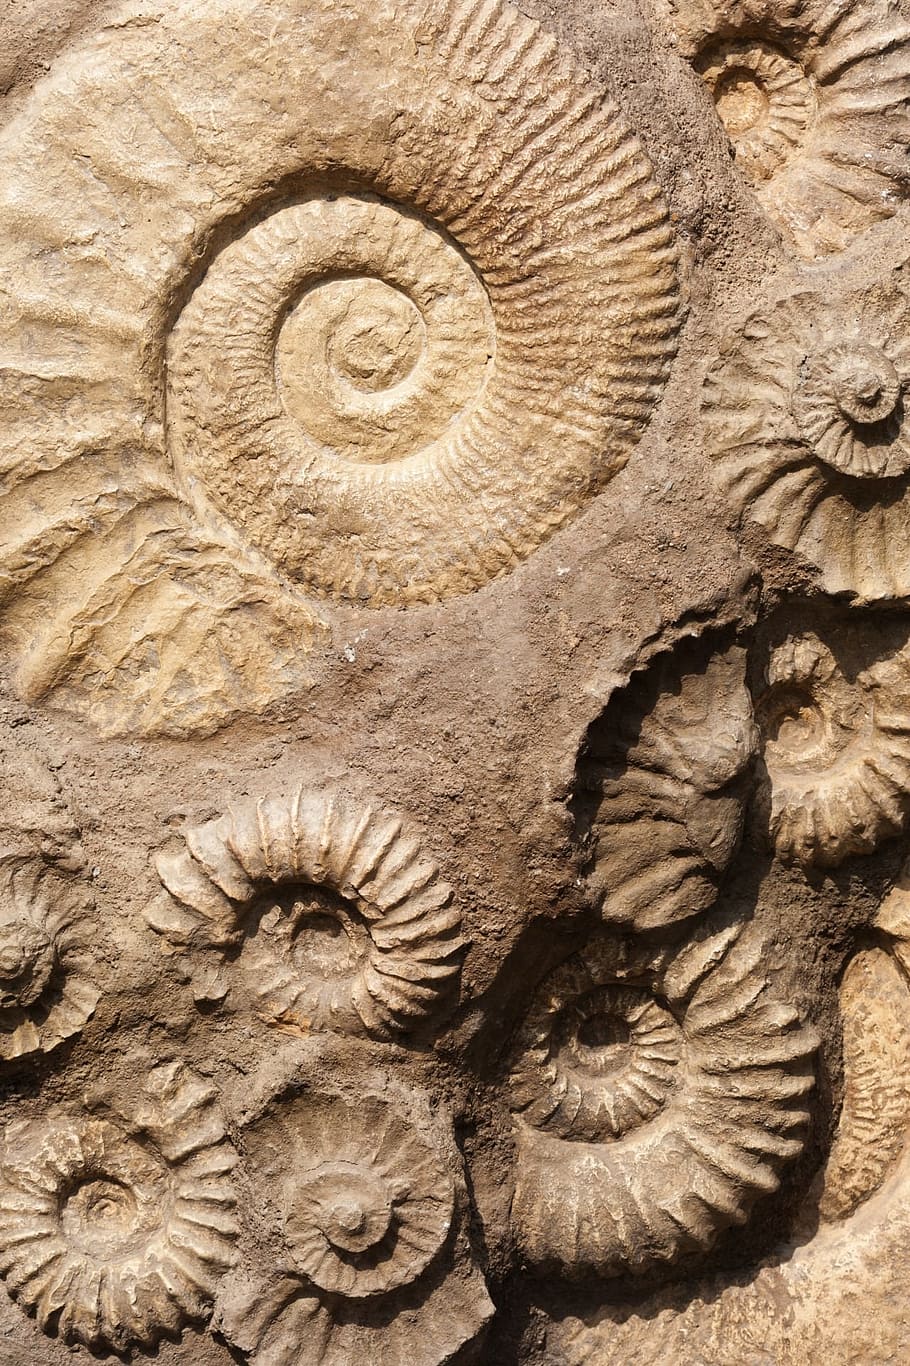 en relieve, concha de nautilus, marrón, decoración, concha, fósil, antiguo, piedra, naturaleza, roca